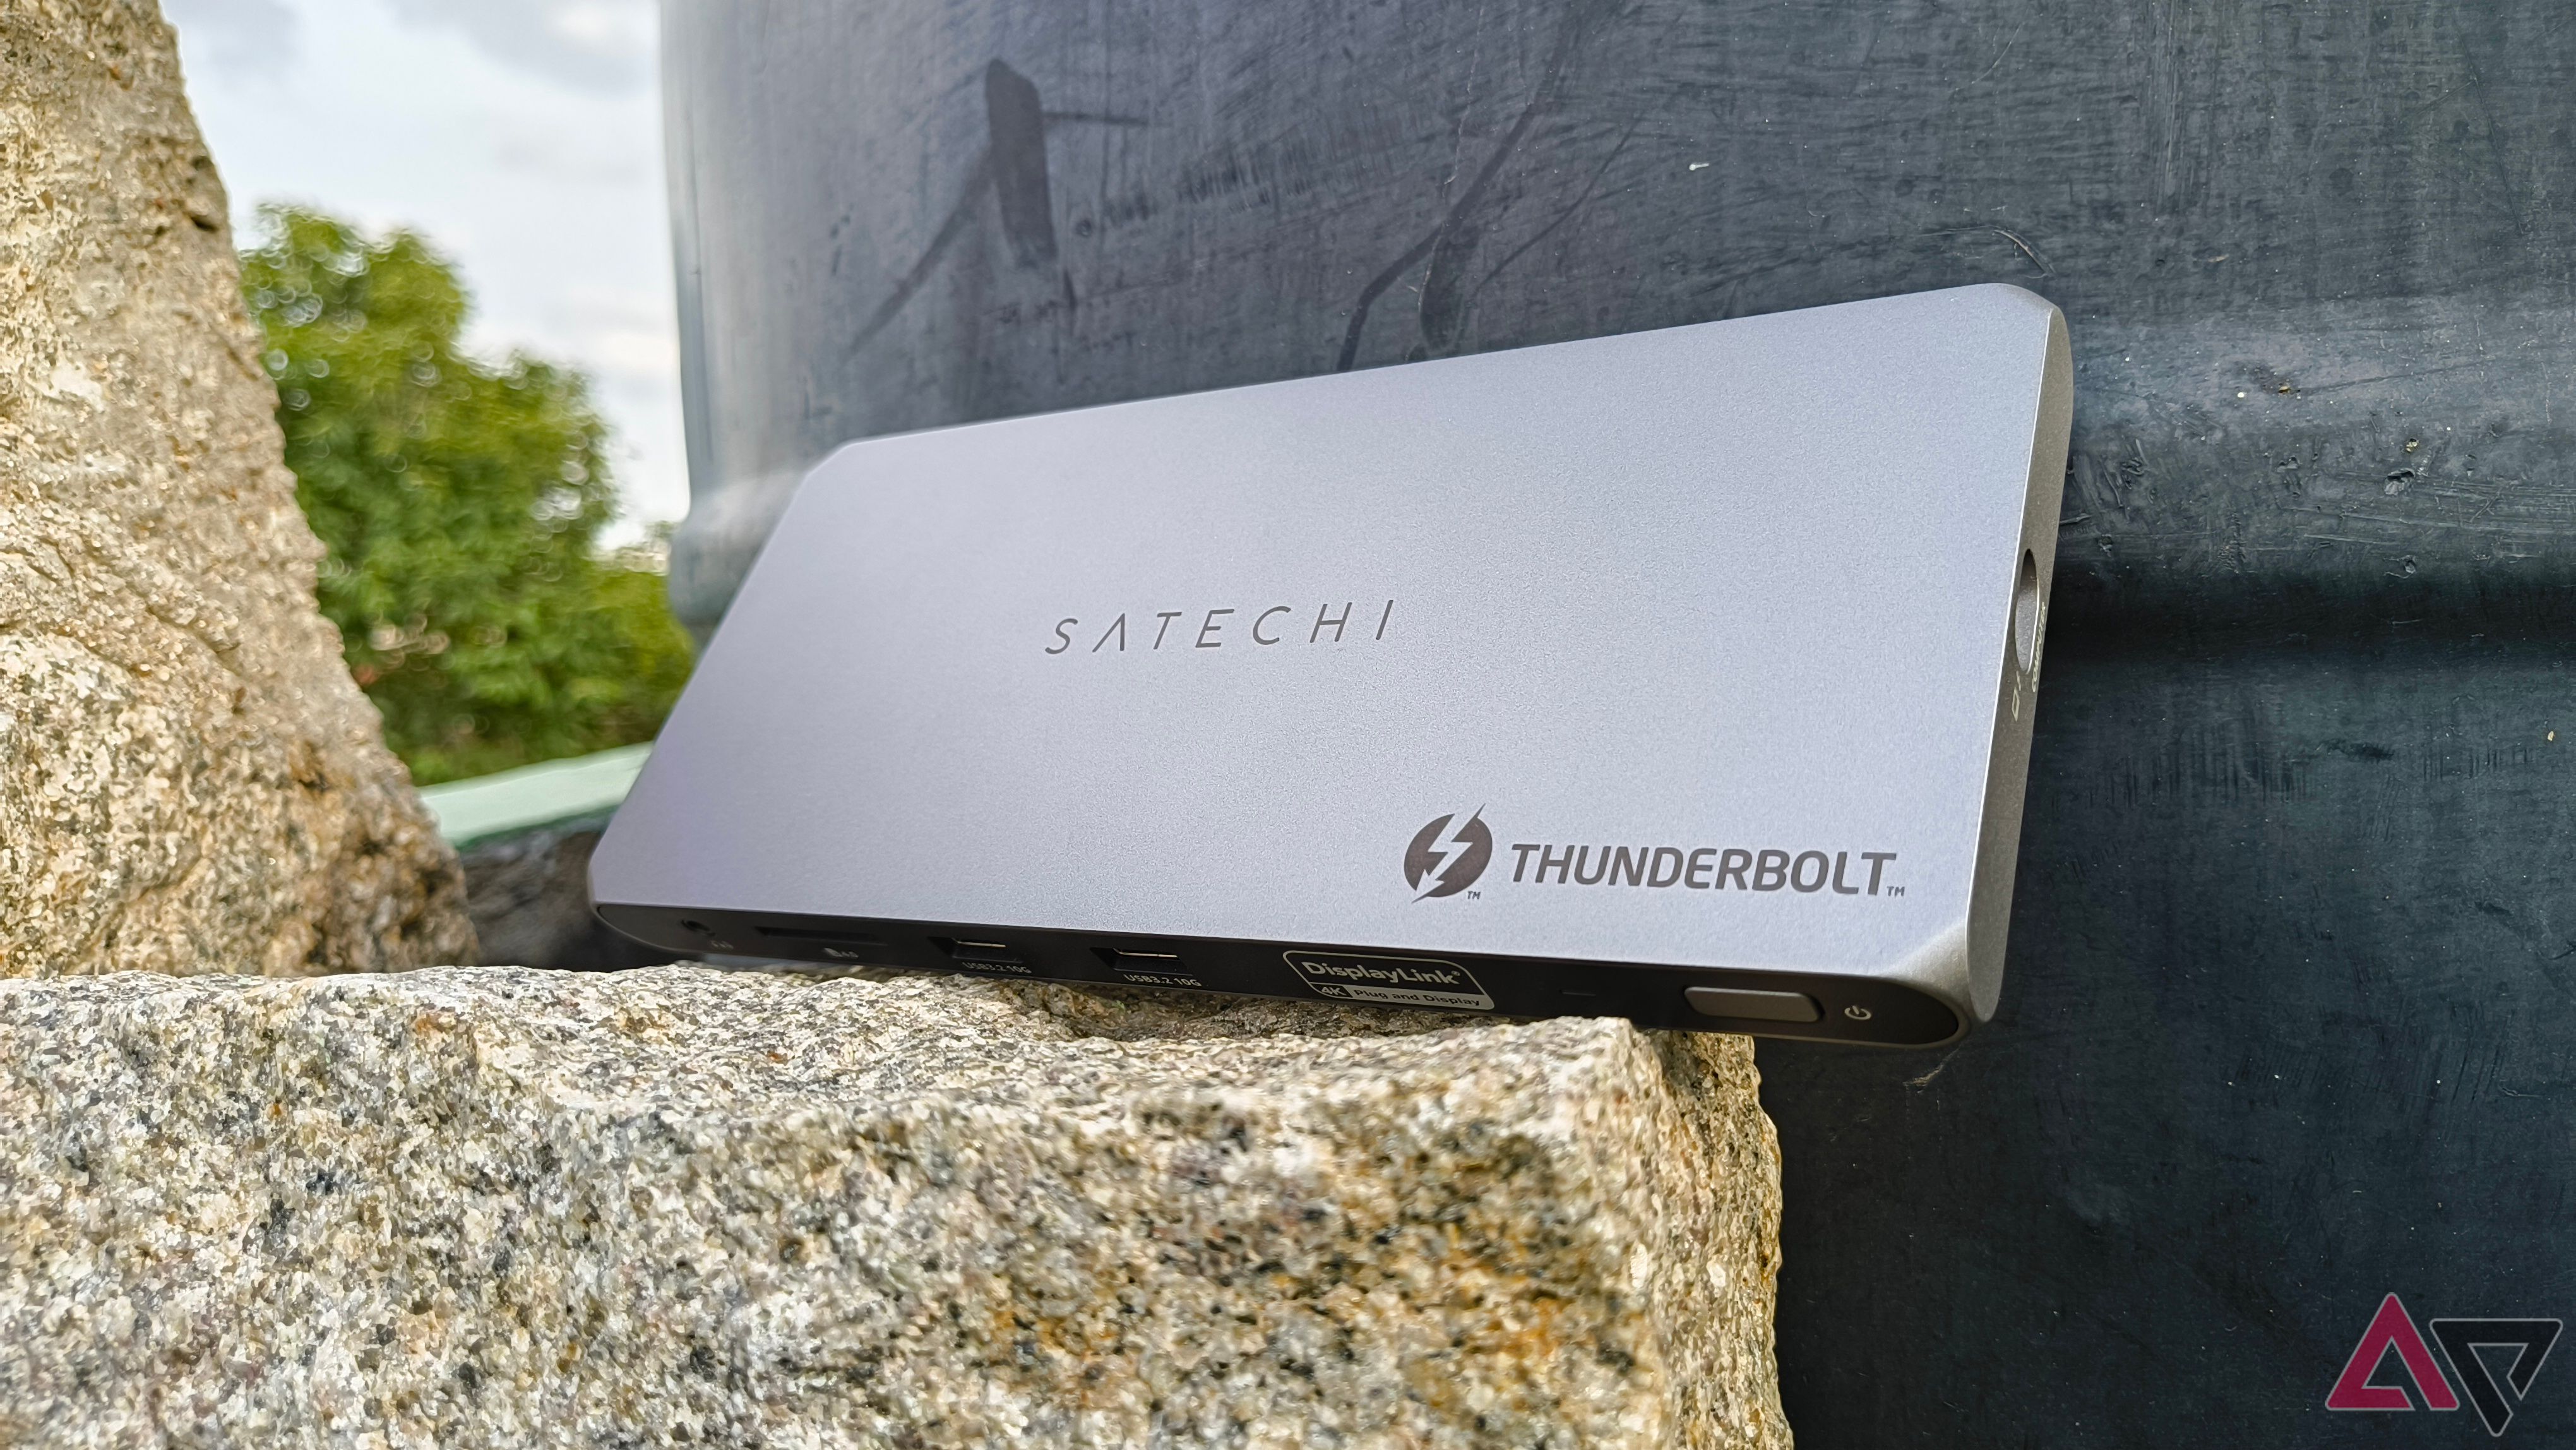 Dock Satechi Thunderbolt 4 instalado contra uma parede empoleirada em uma rocha